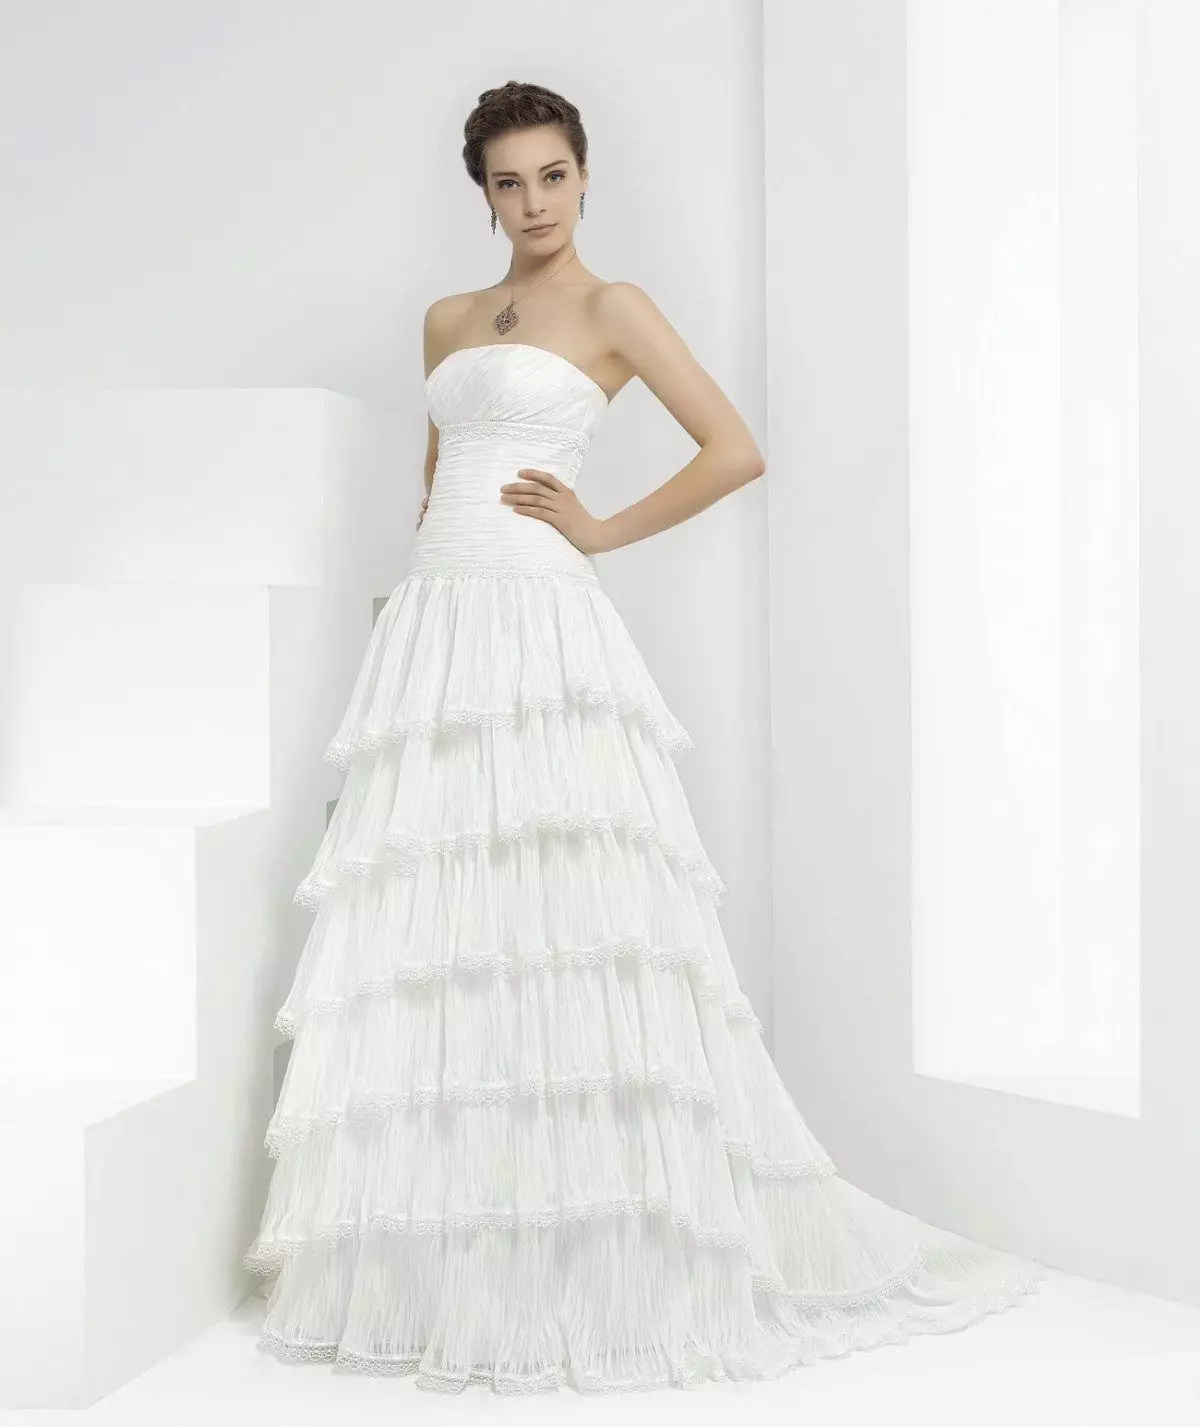 Bridal dress from Pepe Botella multi-layer